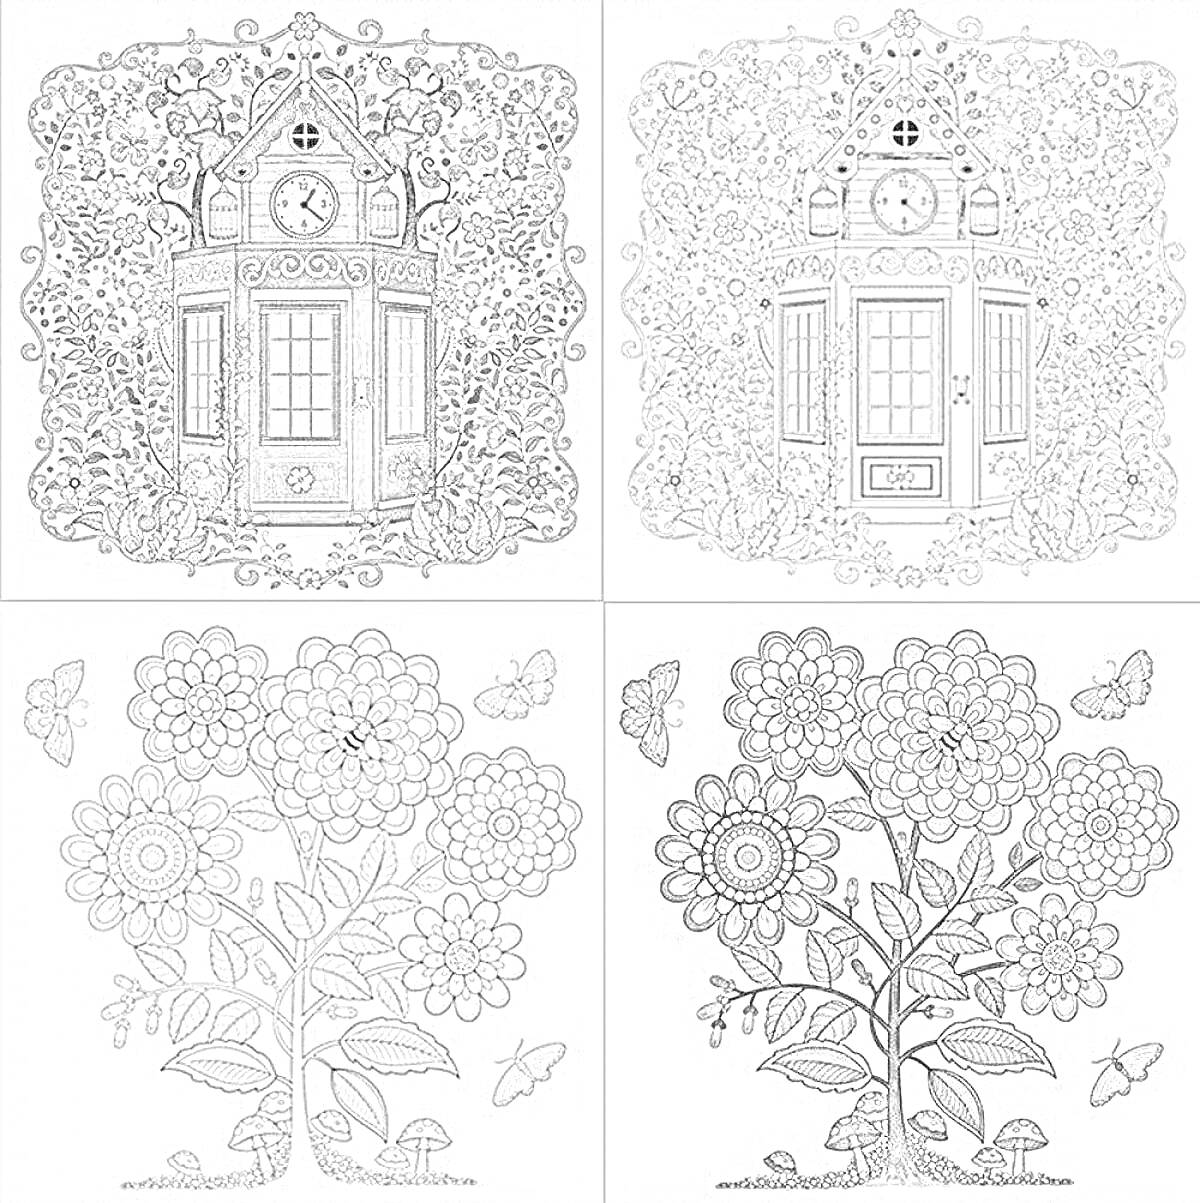 Раскраска Четыре иллюстрации загадочного сада - часовая башня с траекторией и лианами, дом с часами и окнами, цветущее дерево с бабочками, и другое цветущее дерево с бабочками.